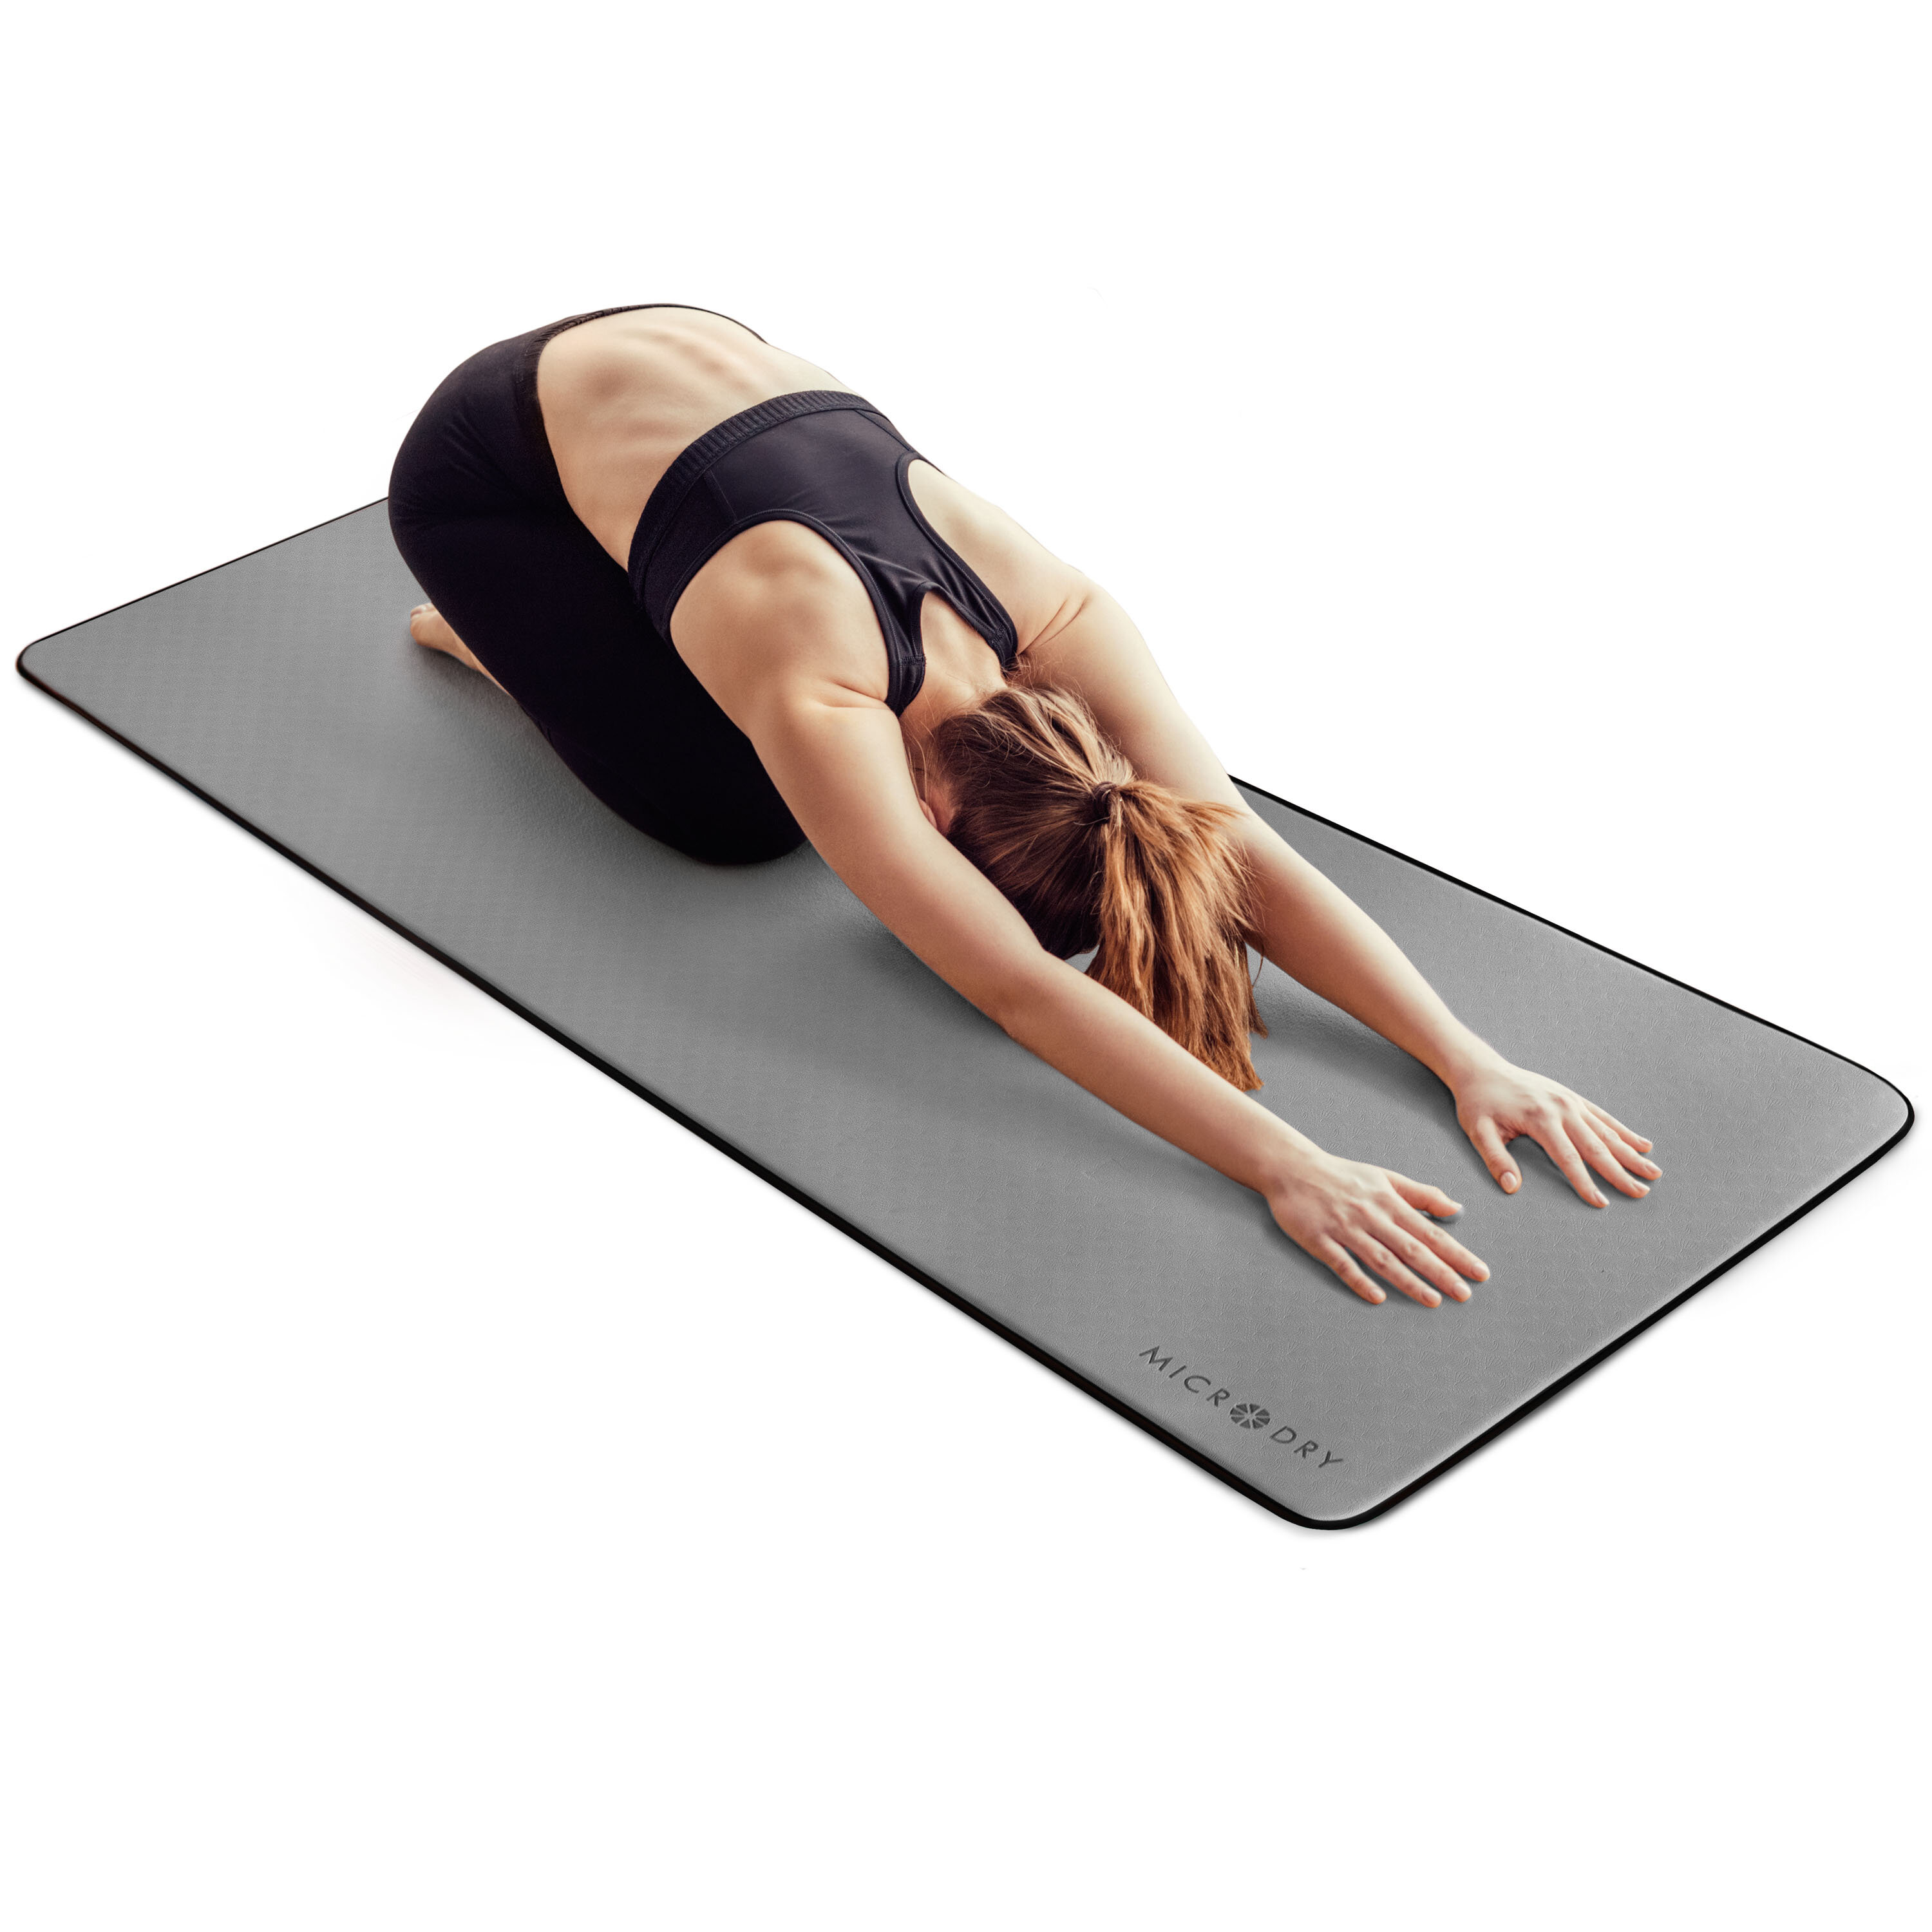 Casall Yoga Mat Review